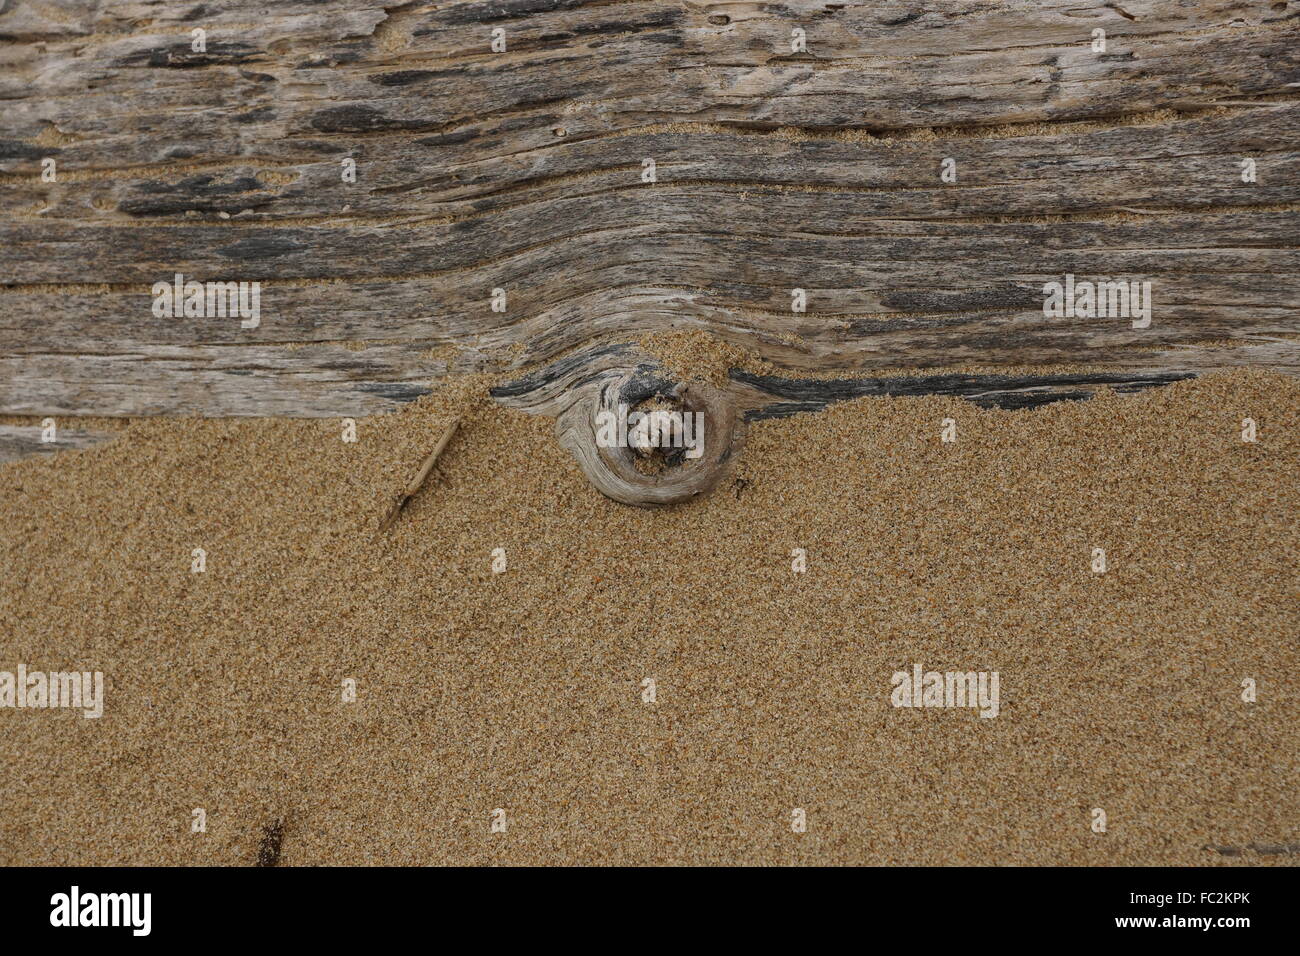 Treibholz auf Sand sieht aus wie Kuvert. Ideal für Website-header Stockfoto